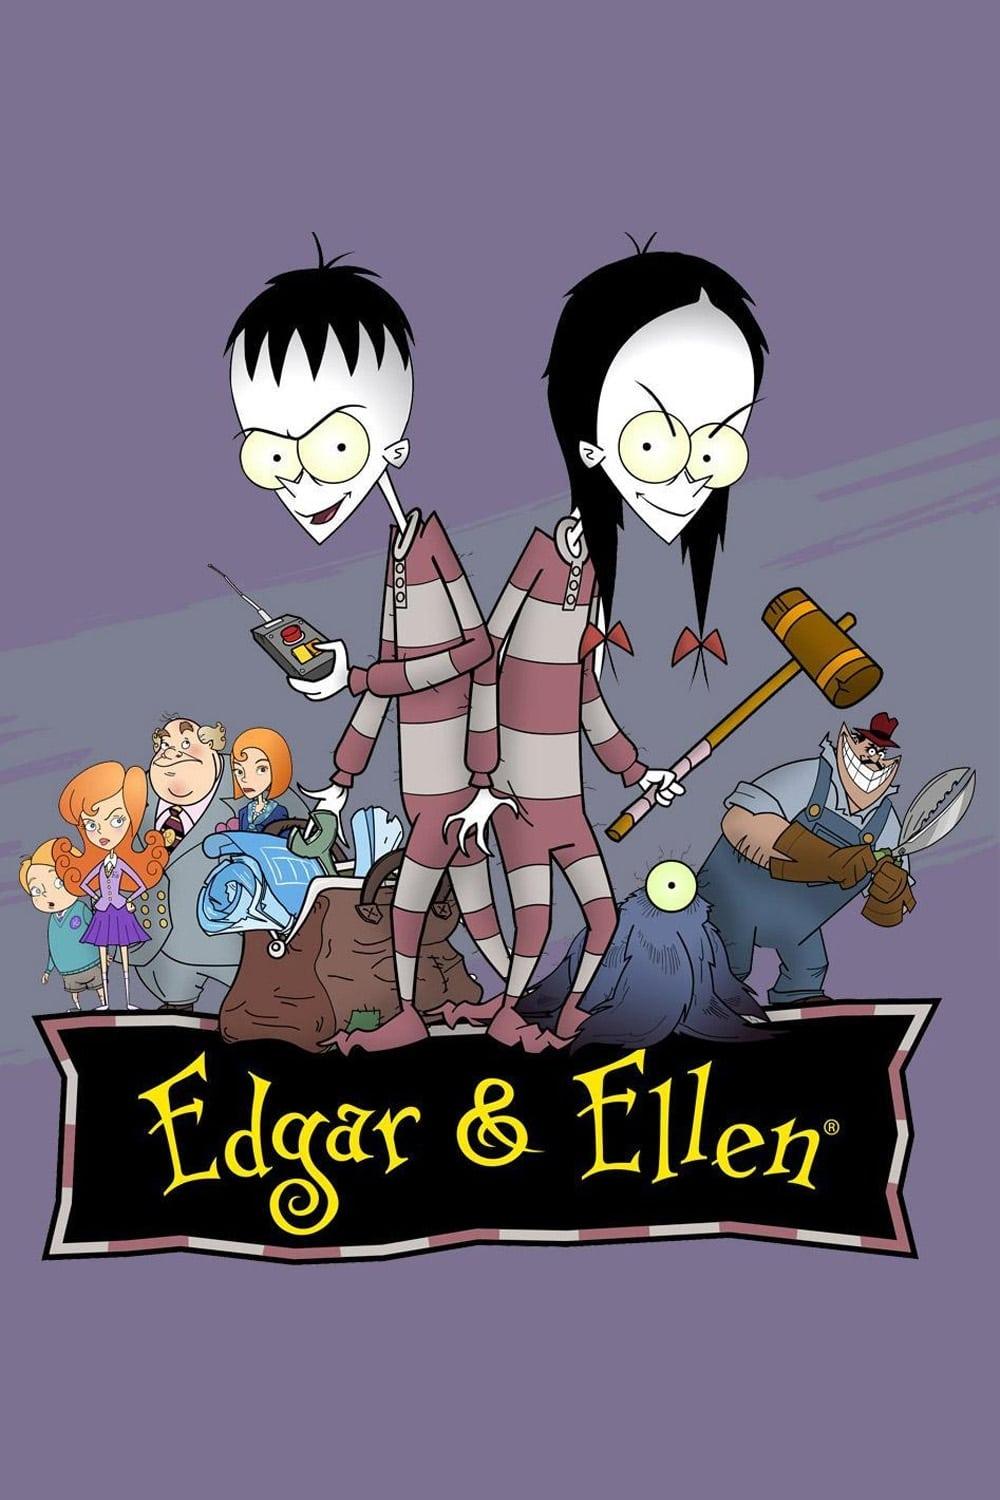 Les saisons de Edgar & Ellen sont-elles disponibles sur Netflix ou autre ?